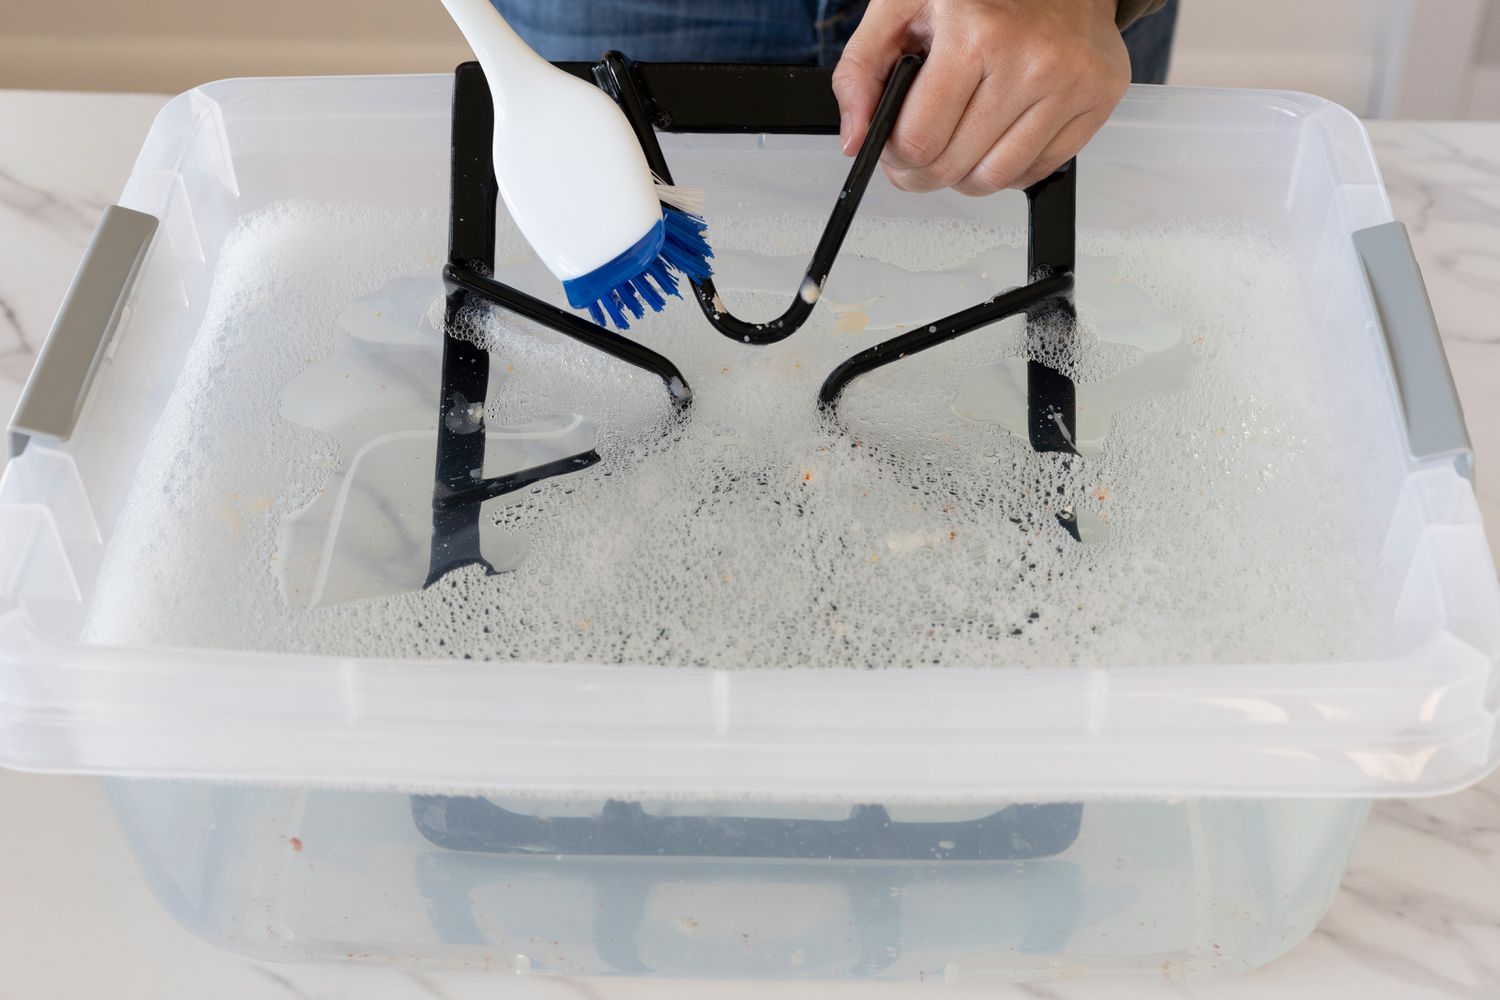 Escova de nylon com cerdas duras esfregando a grelha do fogão em um balde com água e sabão